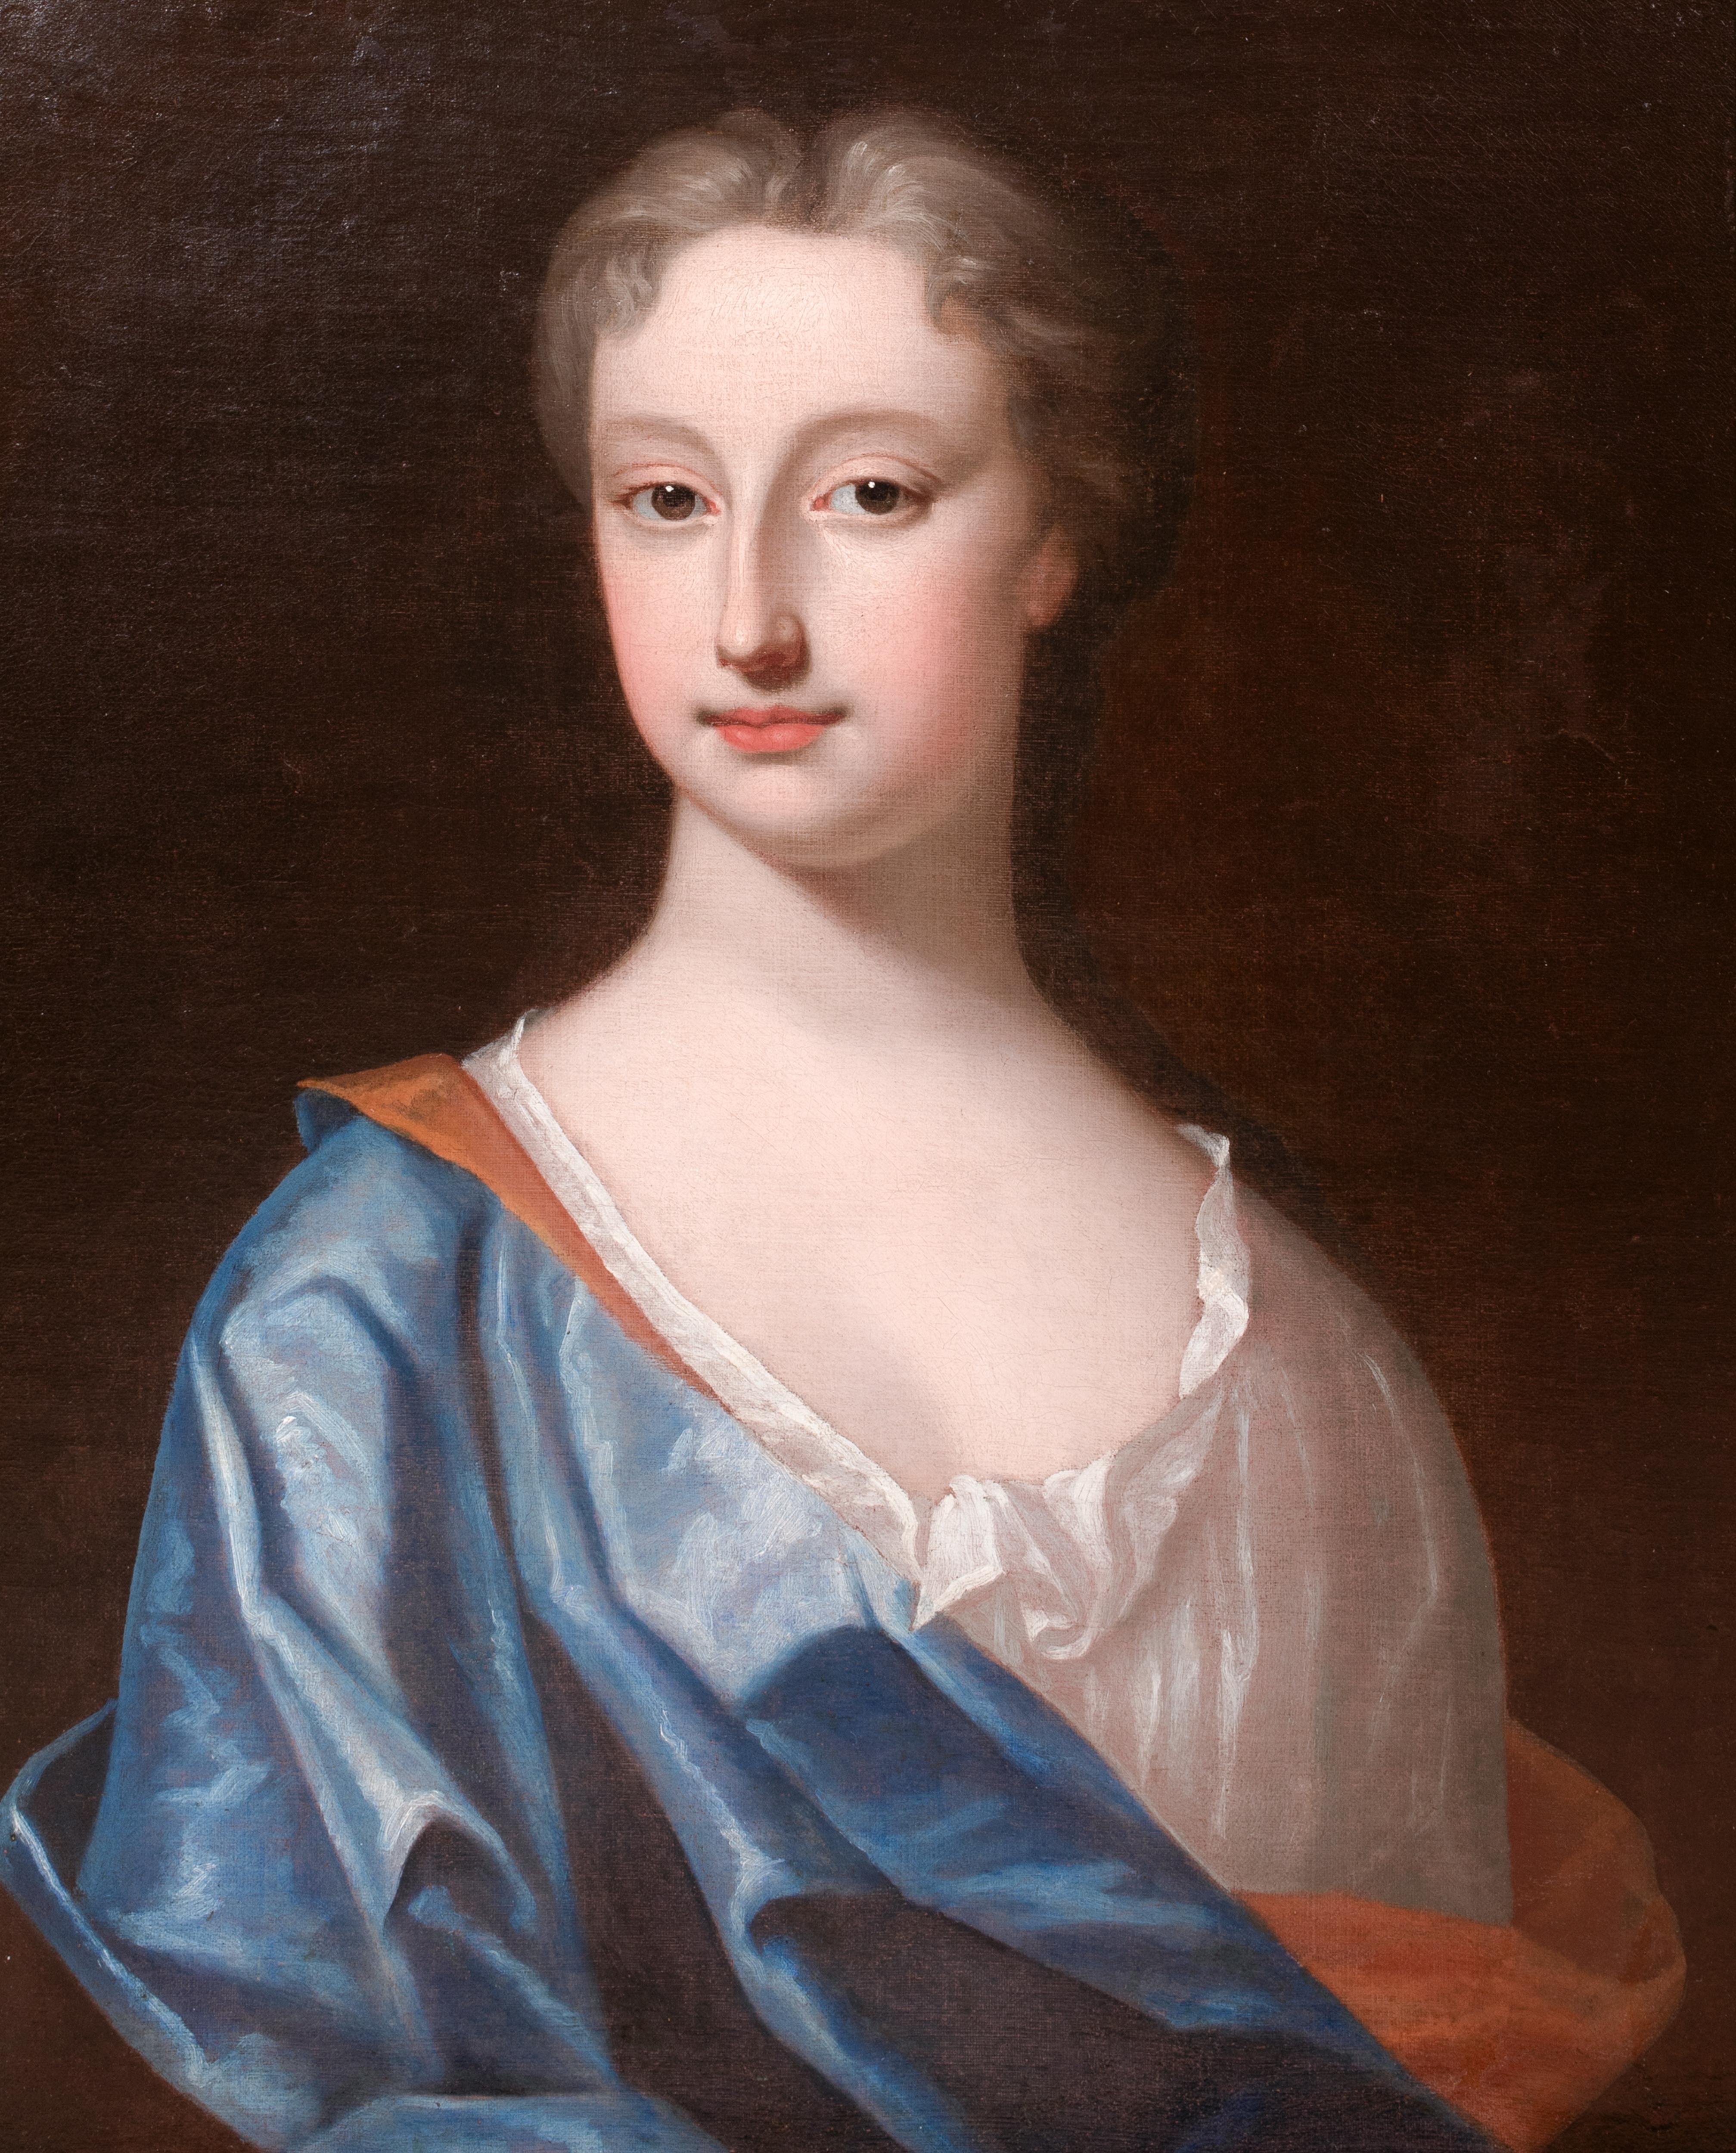 Portrait L'honorable Mme Elizabeth Tufton (Wilbraham), vers 1710

Sir Godfrey Kneller (1646-1723)

Grand portrait vers 1710 de l'honorable Elizabeth Tufton (née Wilbraham), huile sur toile provenant du studio de Sir Godfrey Kneller. Excellente